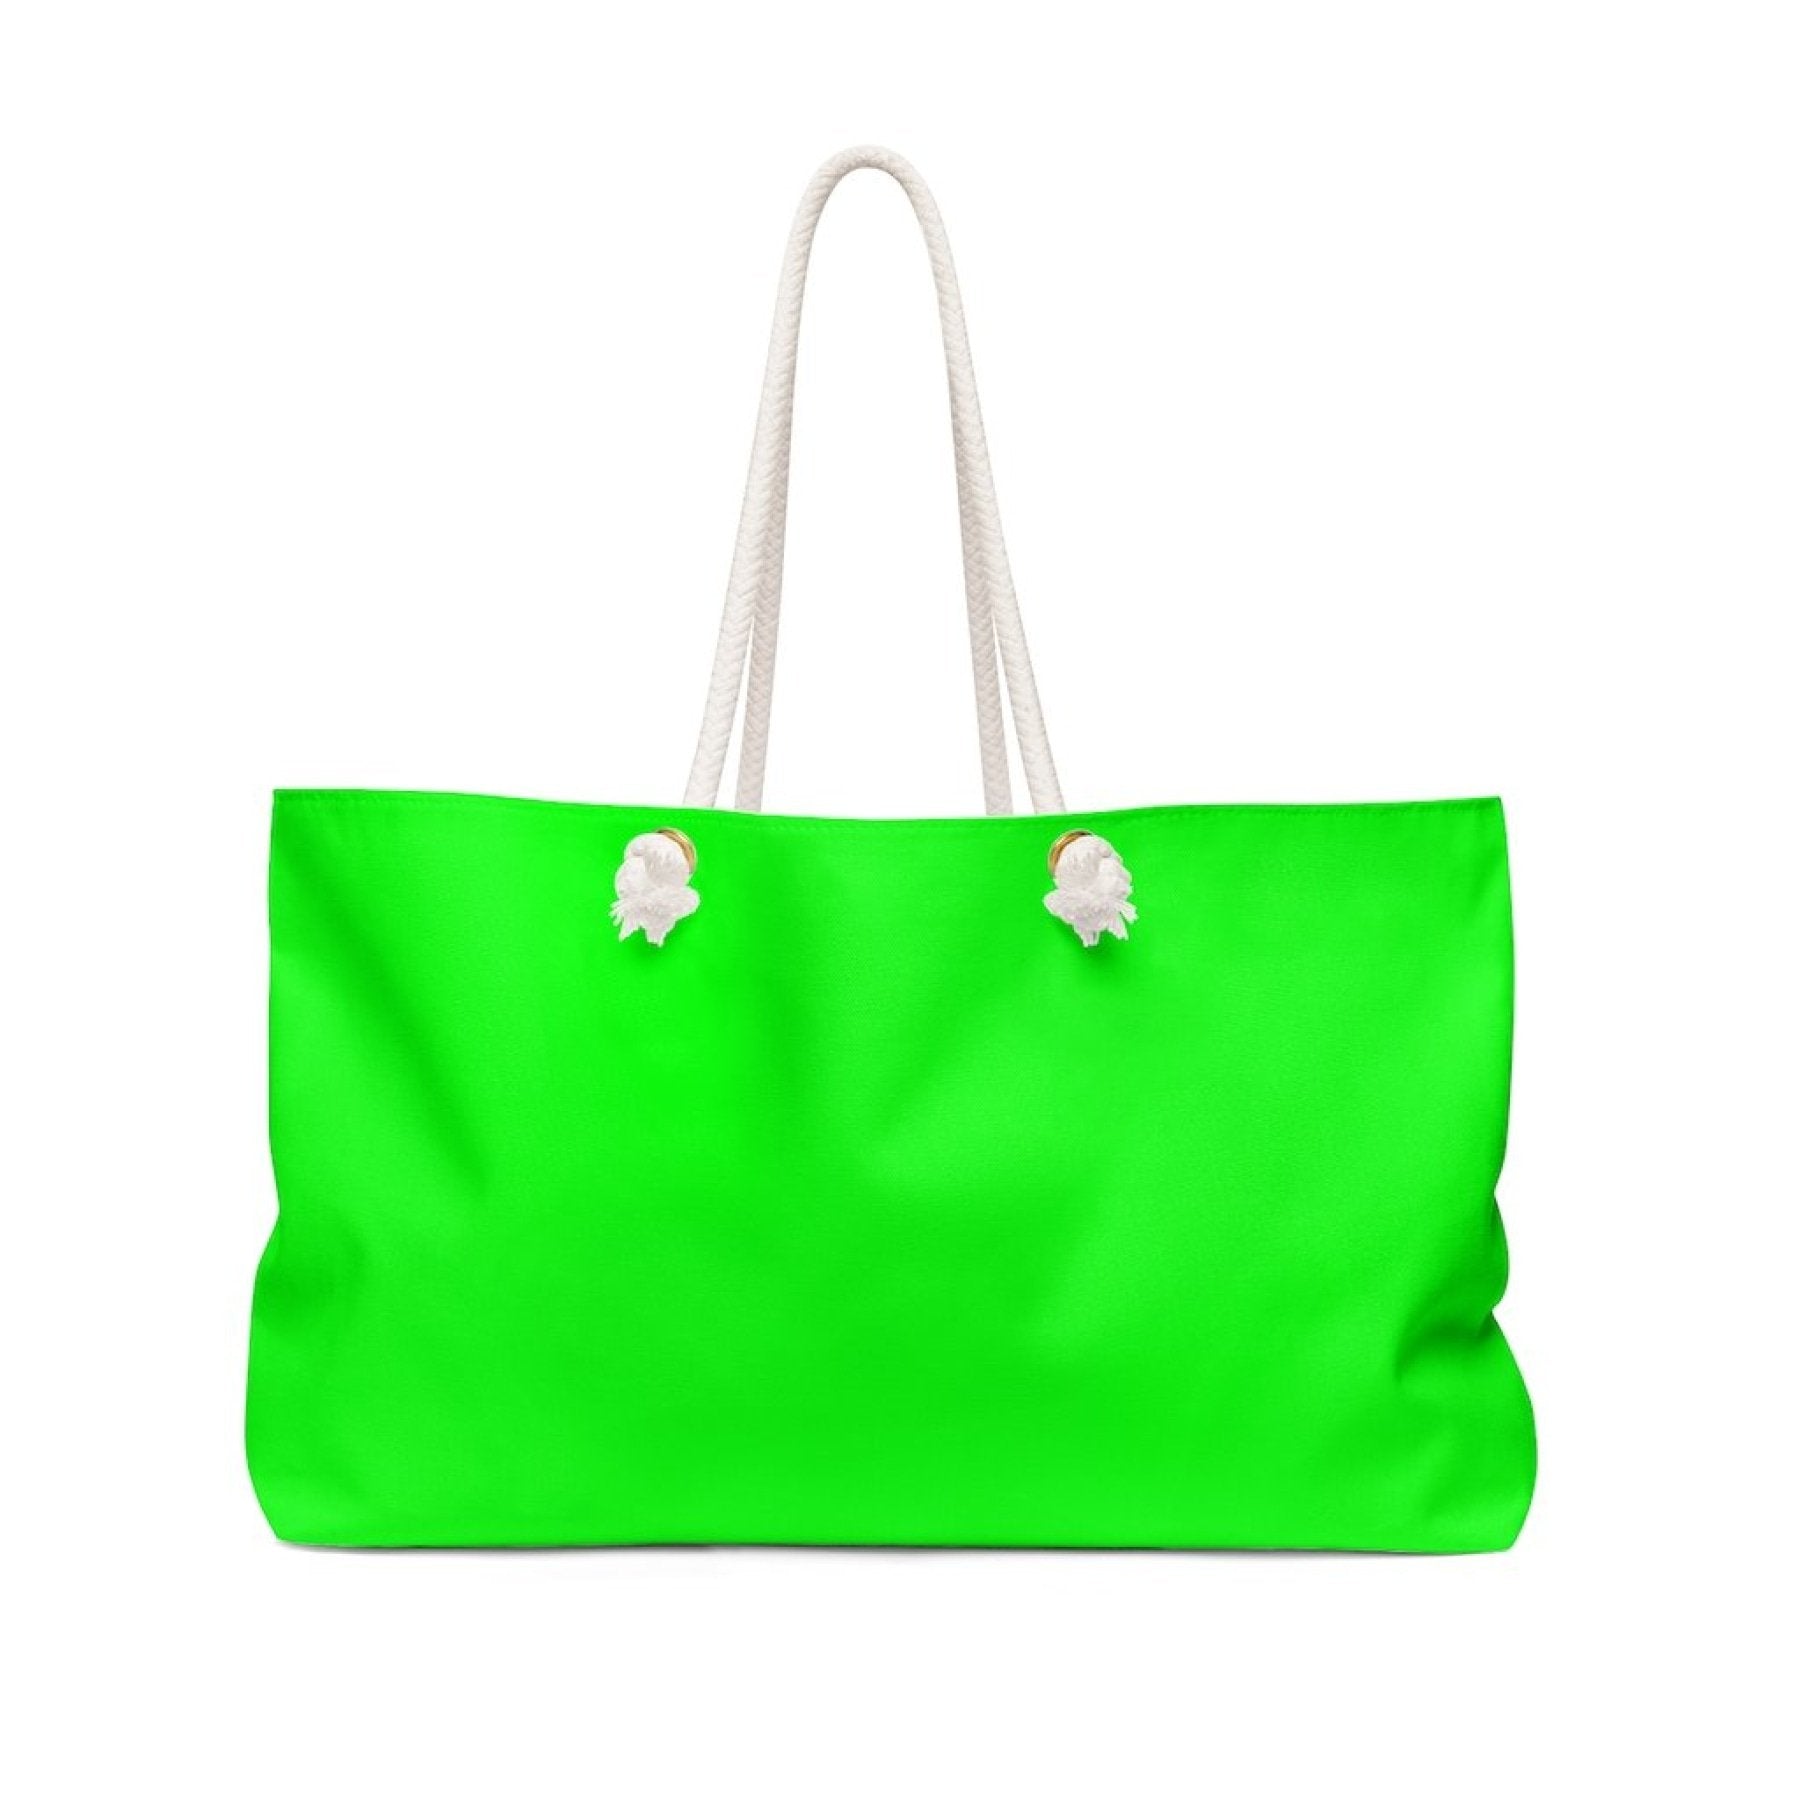 Neon Green Weekender Tote Bag